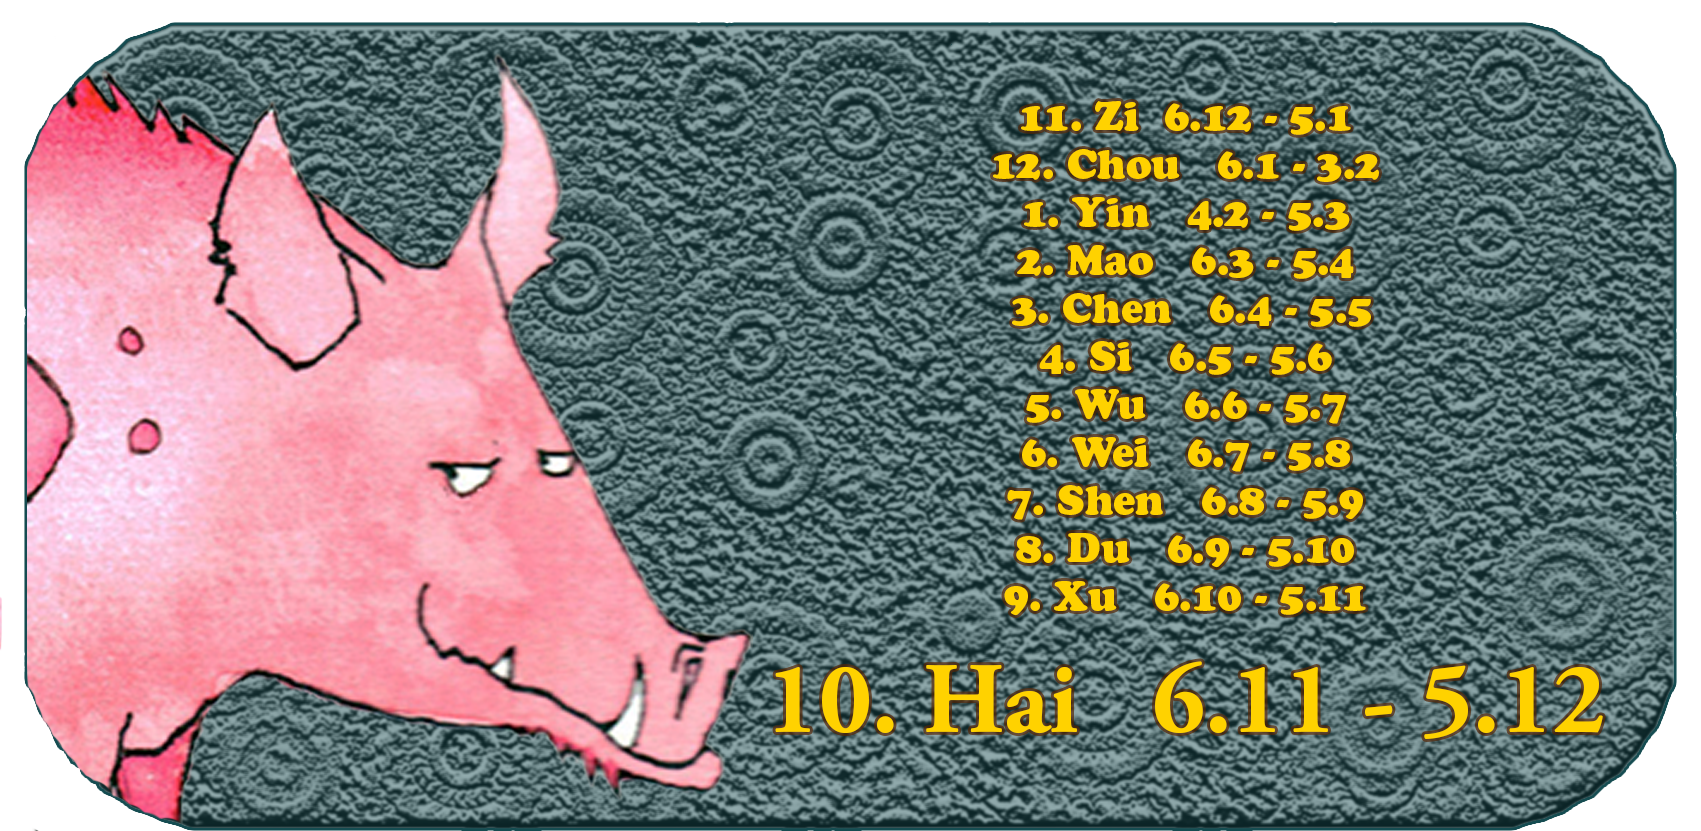 Kiinan horoskooppi | Kaksitoista kiinalaista eläintä | Possu, tammikuu, kuukausi 10 hai